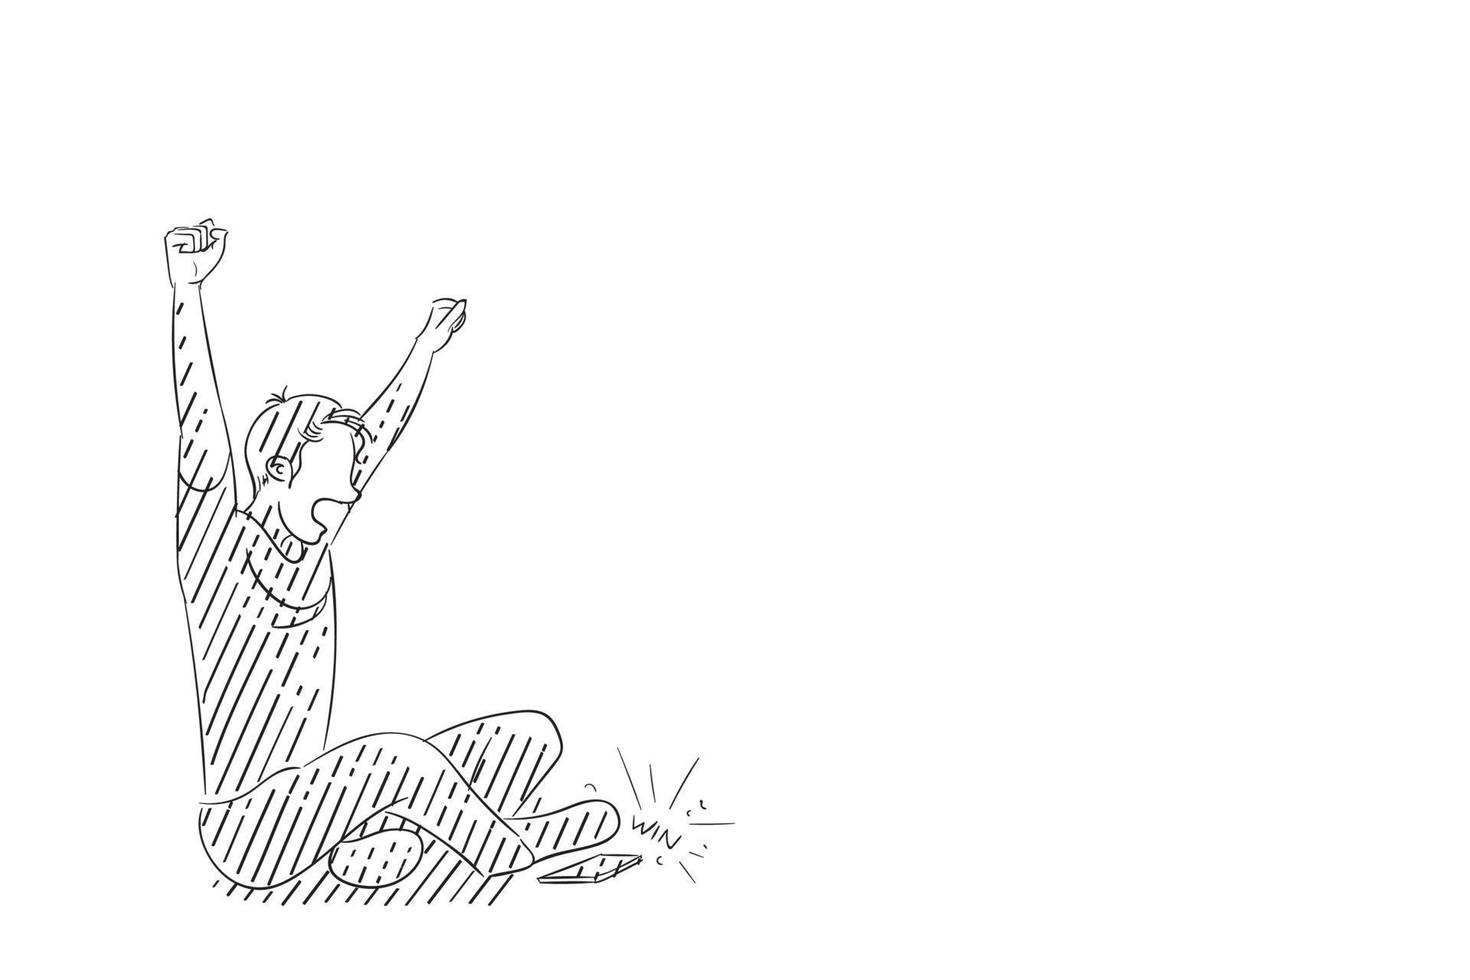 caricatura del hombre celebra la victoria de su equipo de fútbol en la transmisión telefónica. diseño de ilustración vectorial.eps vector